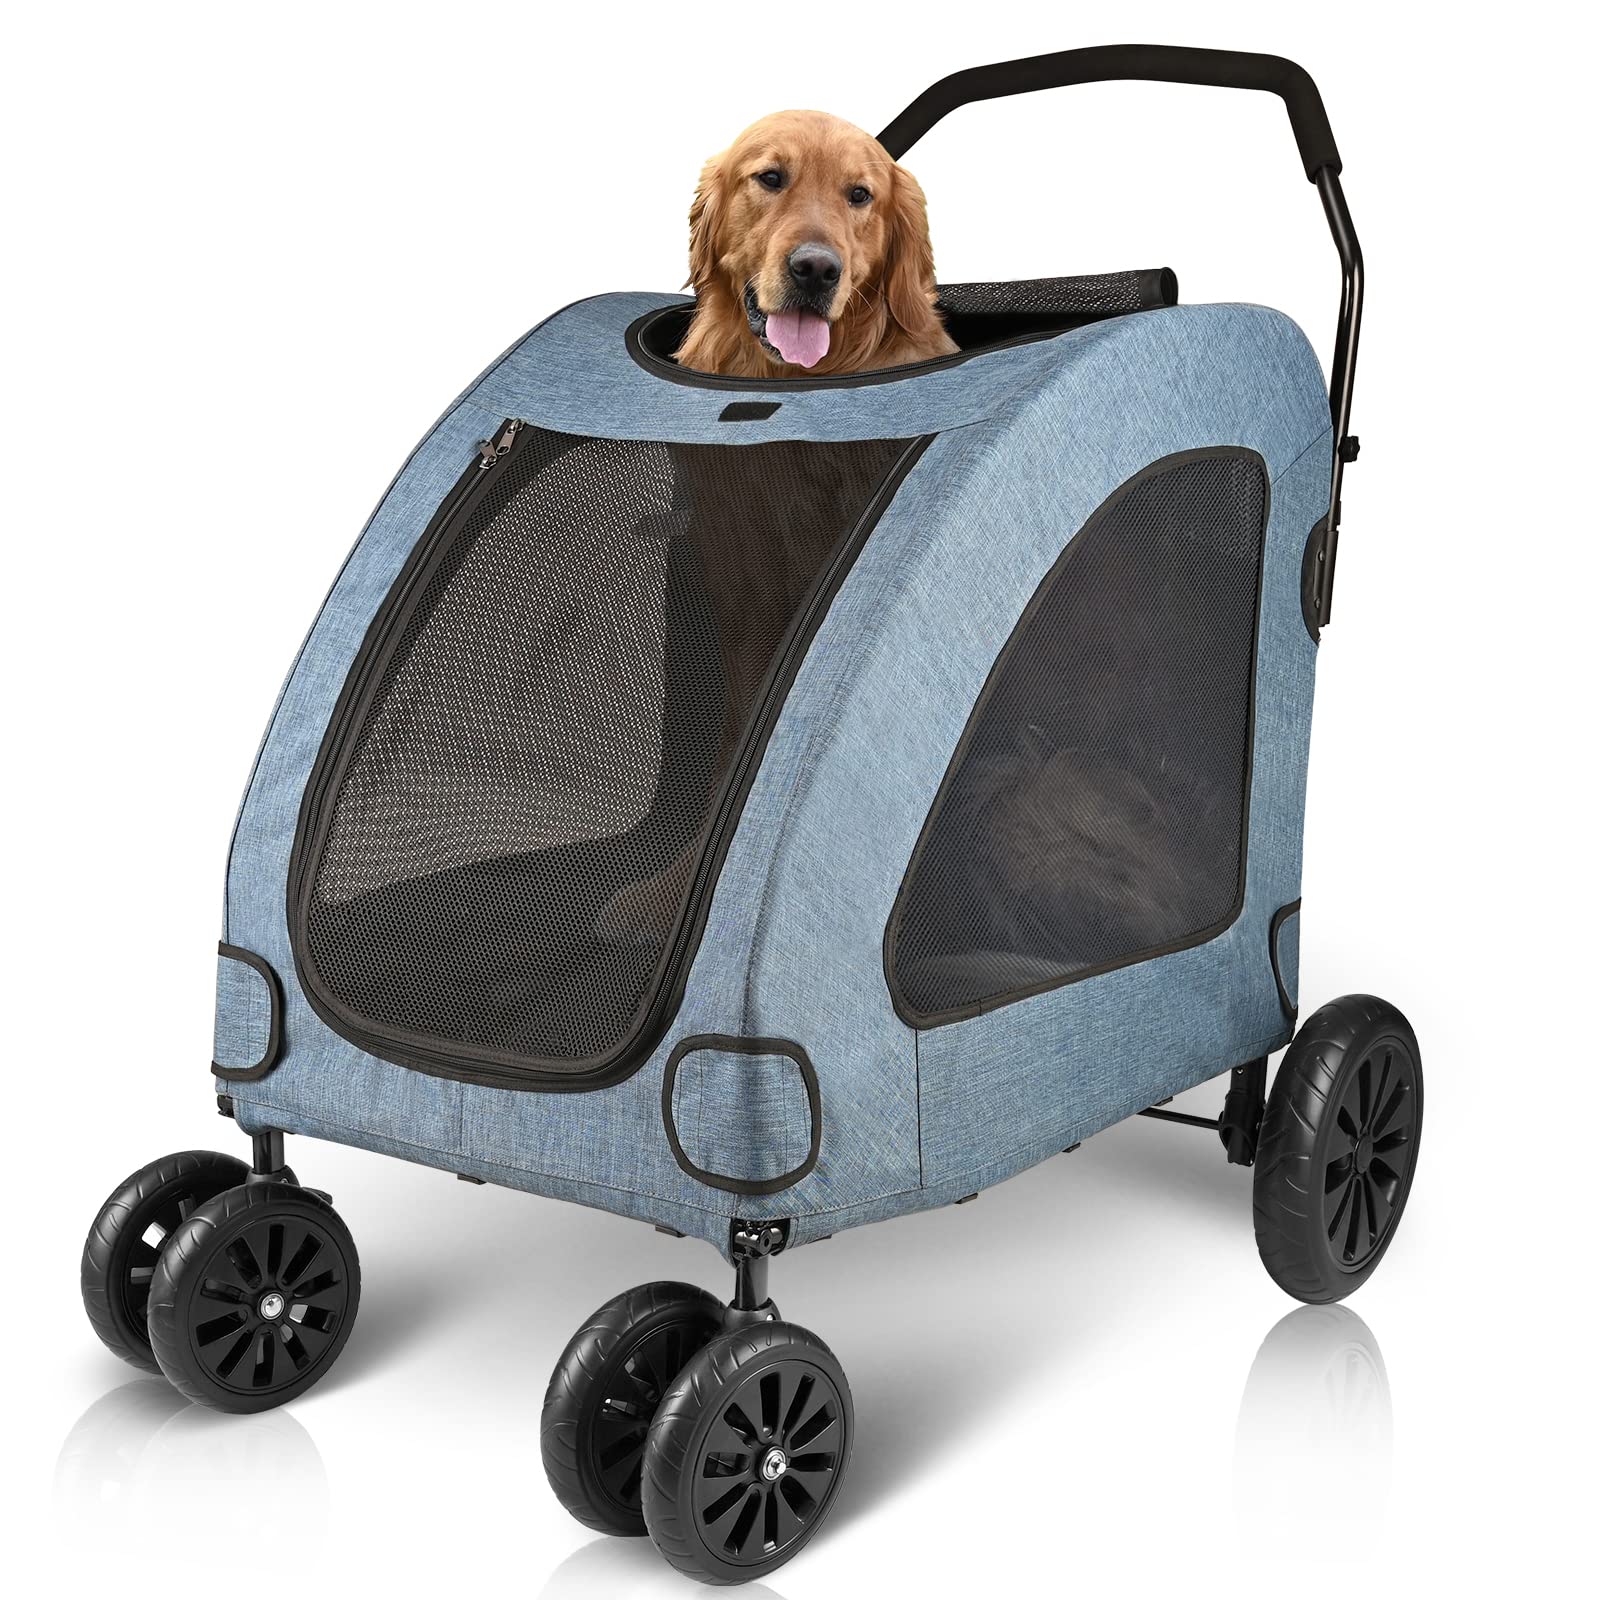 Dog Stroller for Large Dogs